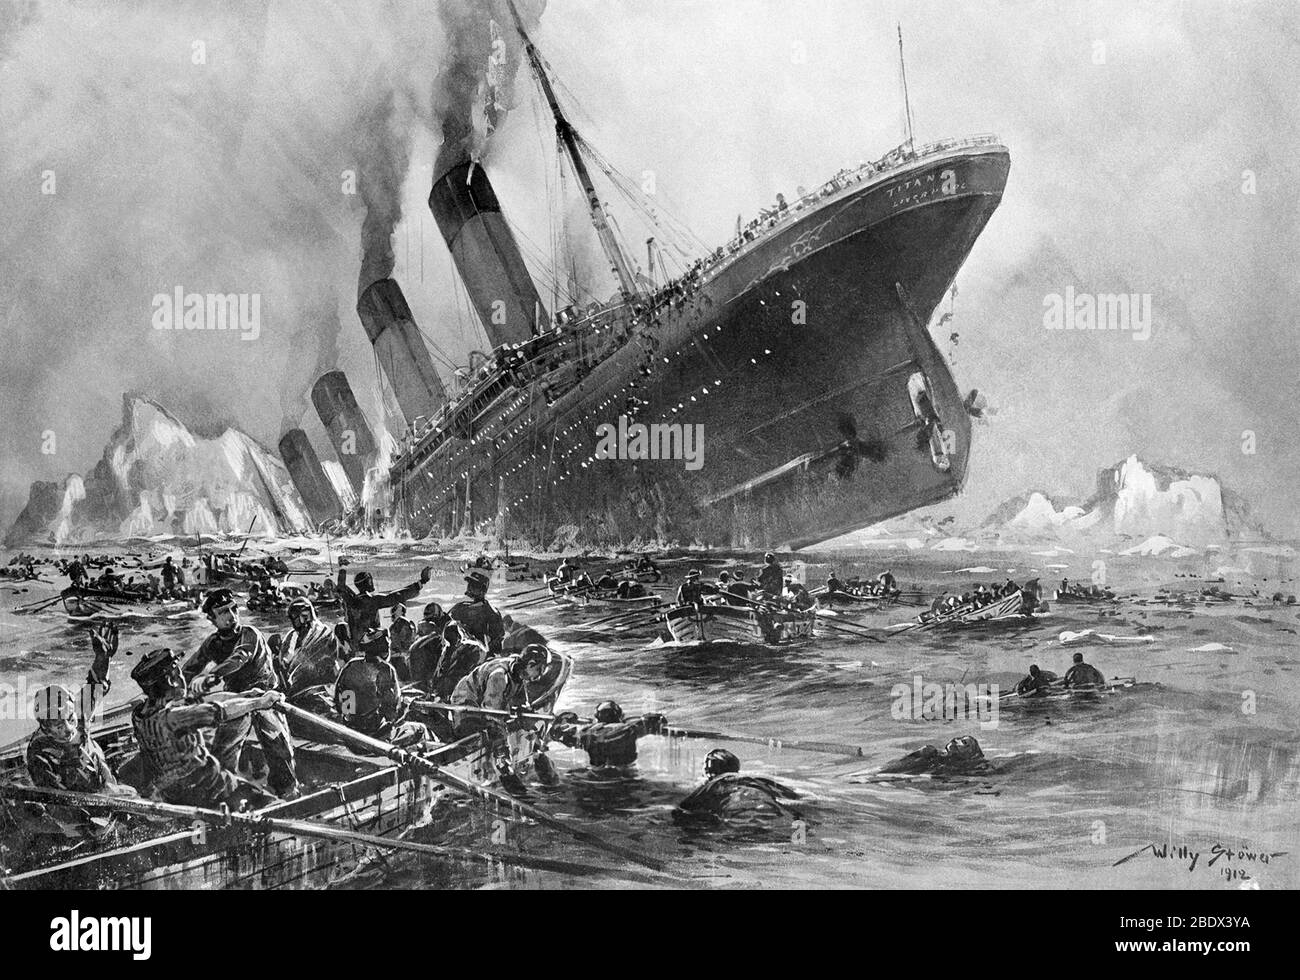 Titanic sinking immagini e fotografie stock ad alta risoluzione - Alamy